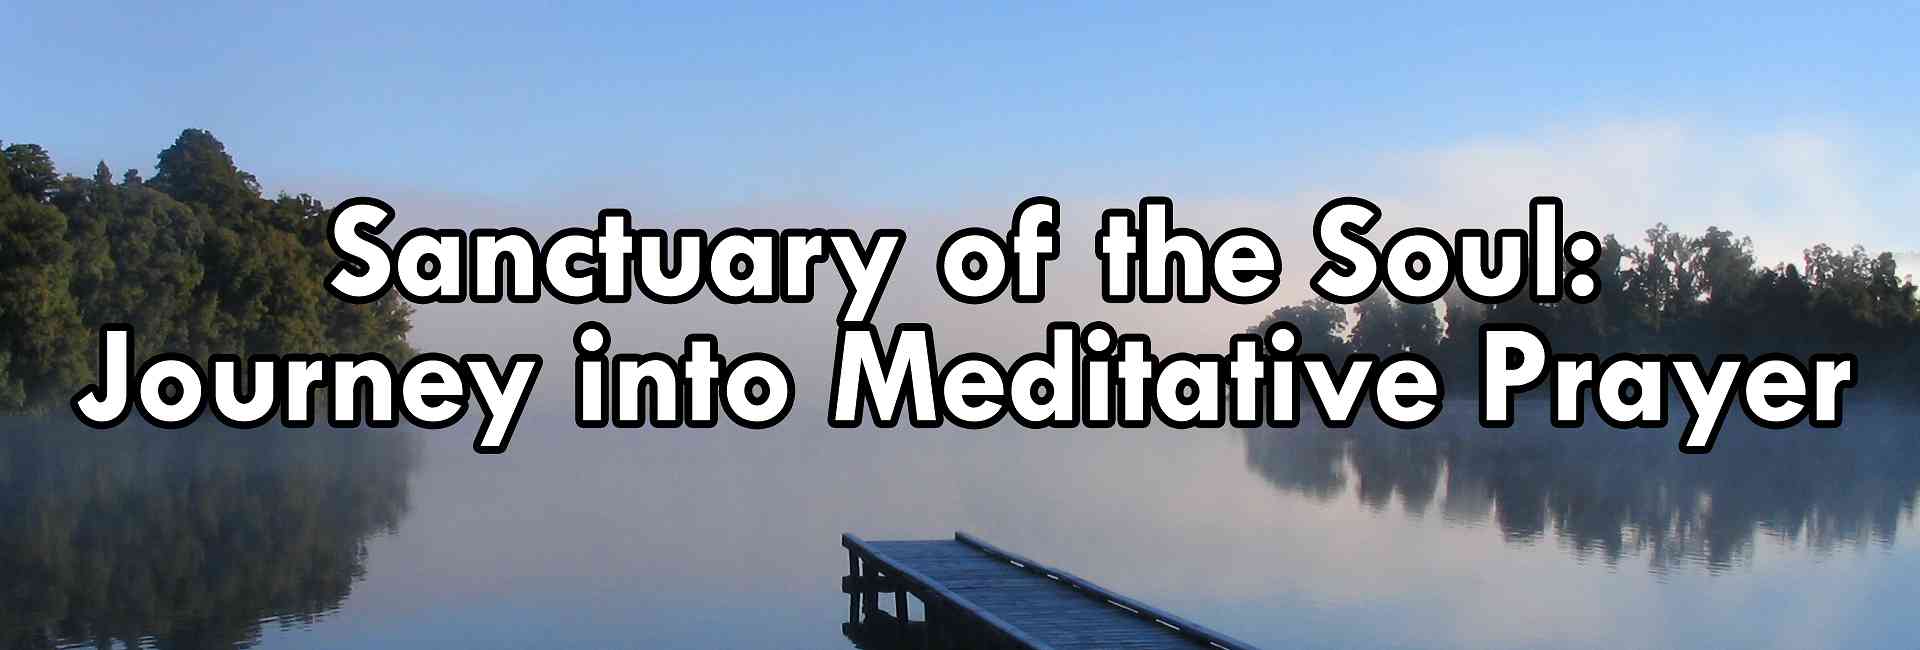 Sanctuary of the Soul Journey into Meditative Prayer